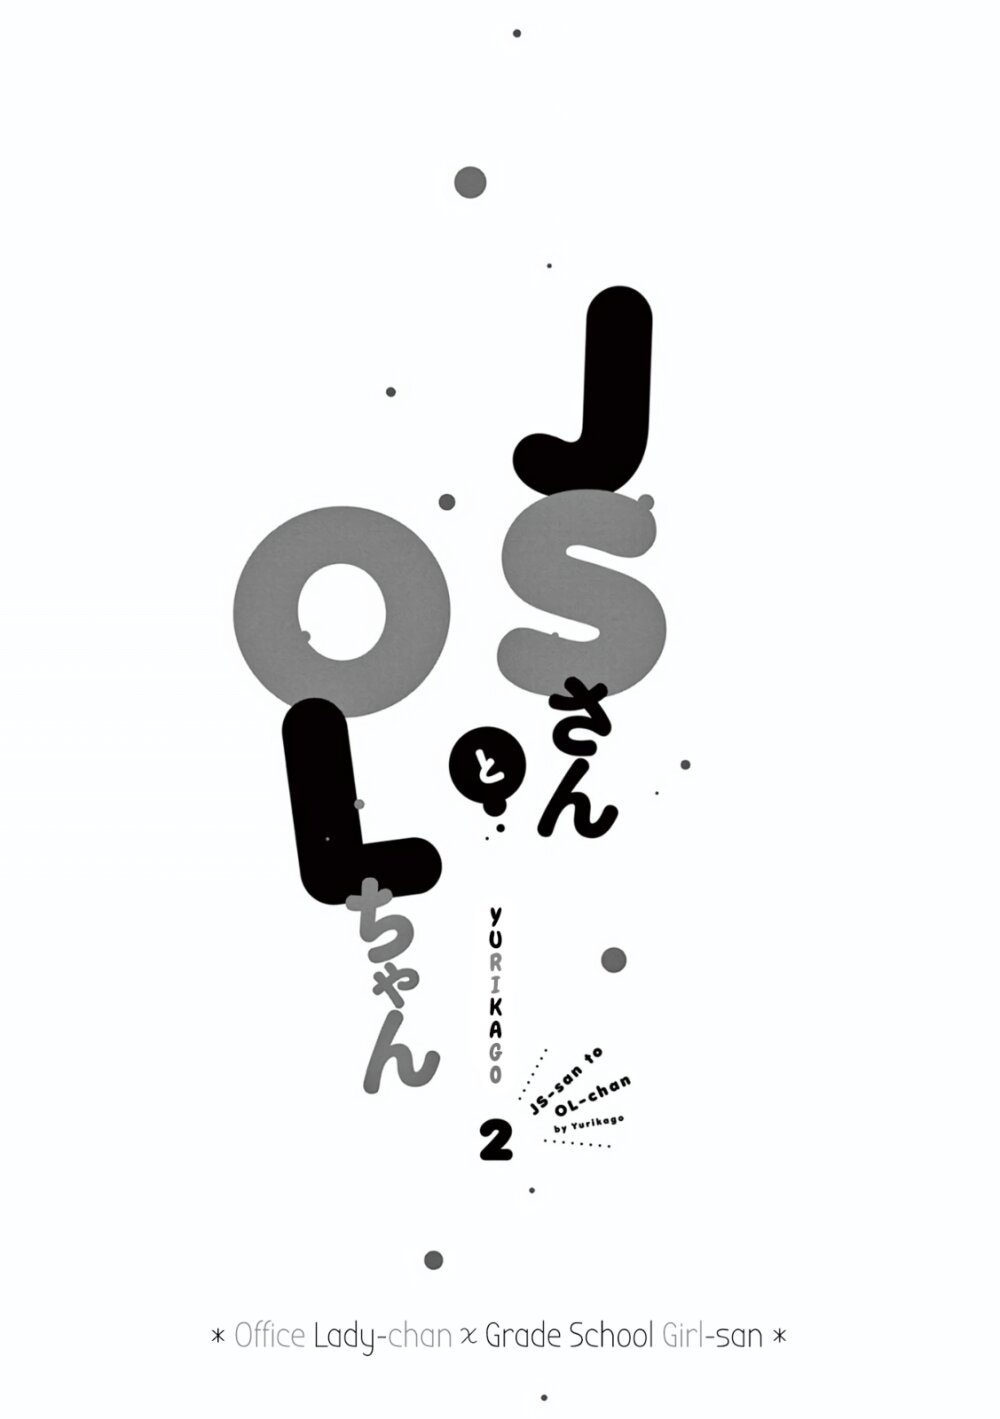 JS san To OL chan 9 02